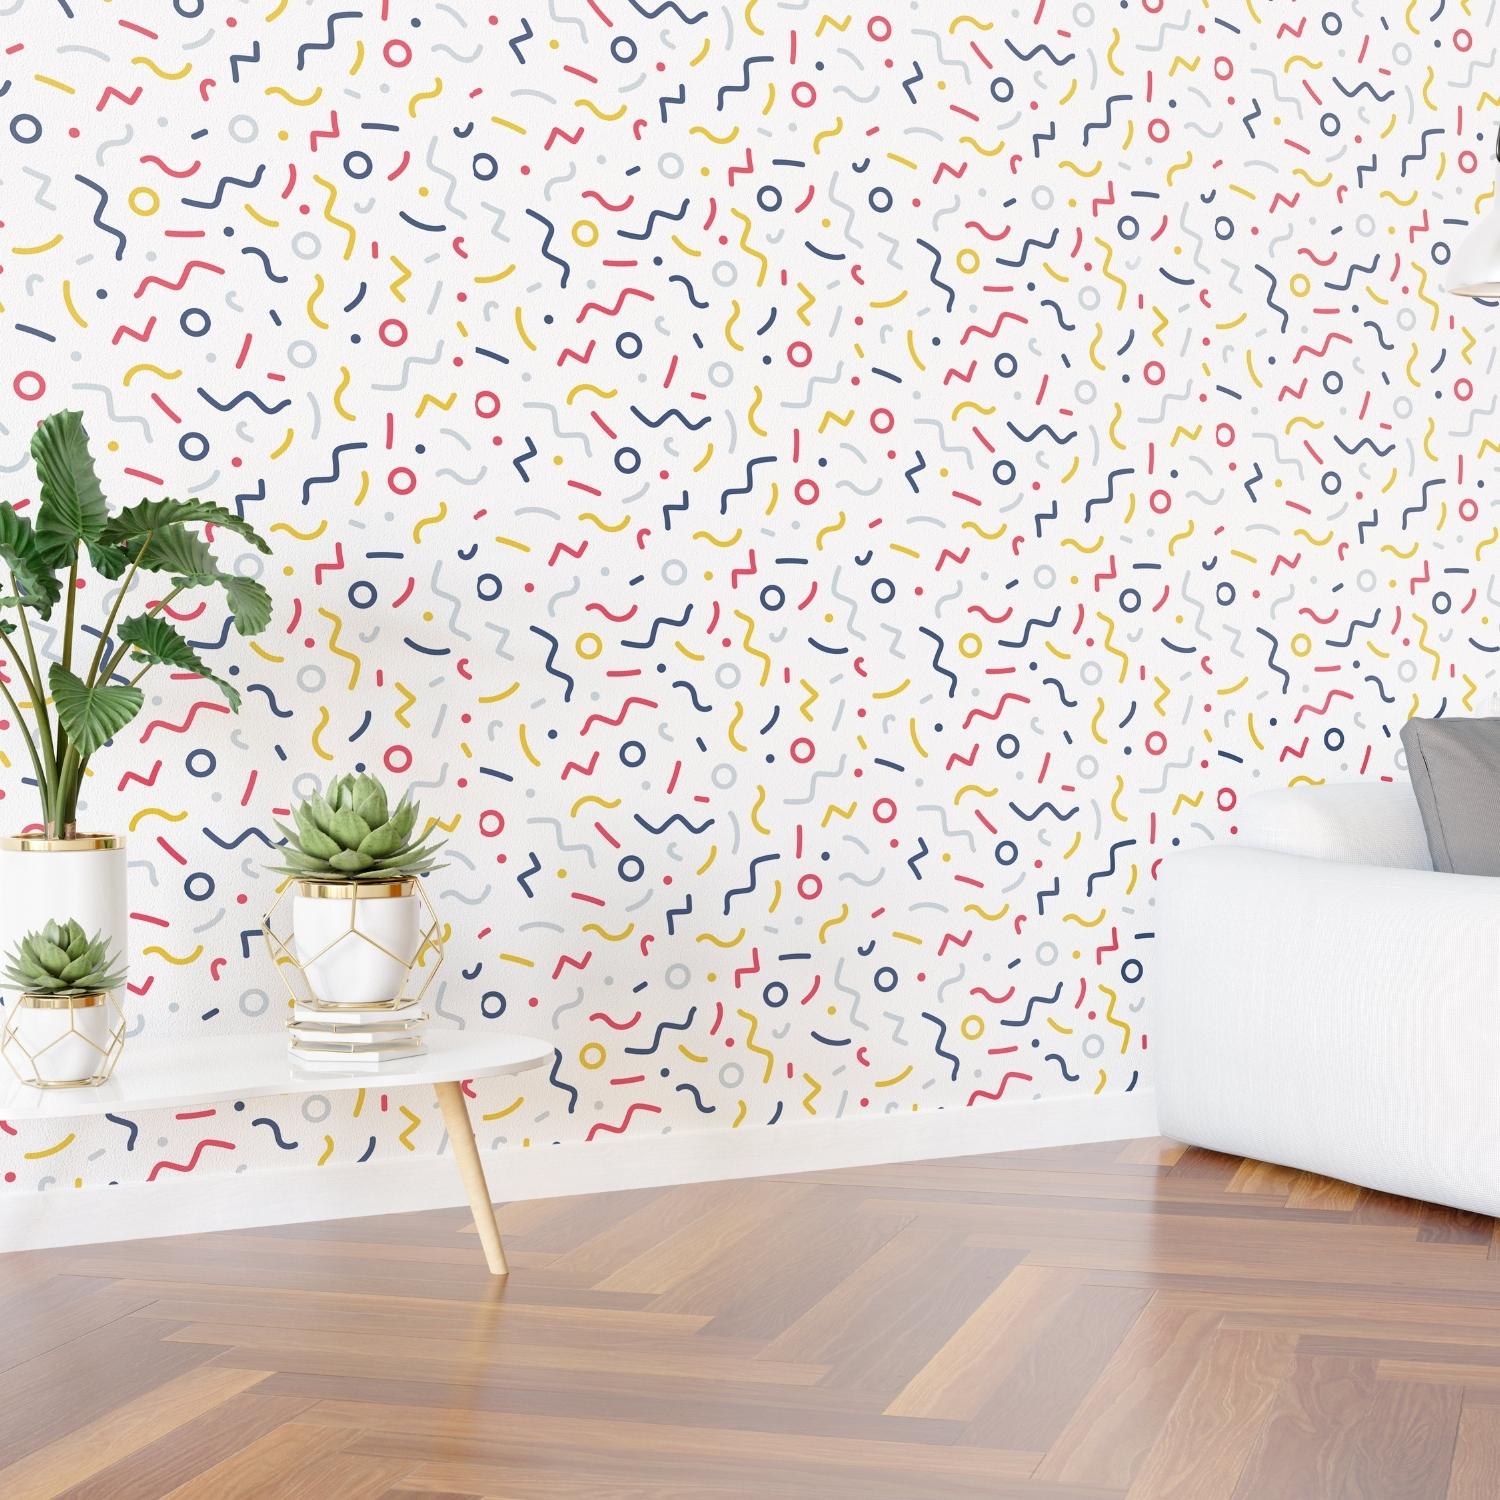 PP8-papier-peint-adhesif-decoratif-revetement-vinyle-motifs-confettis-renovation-meuble-mur-4